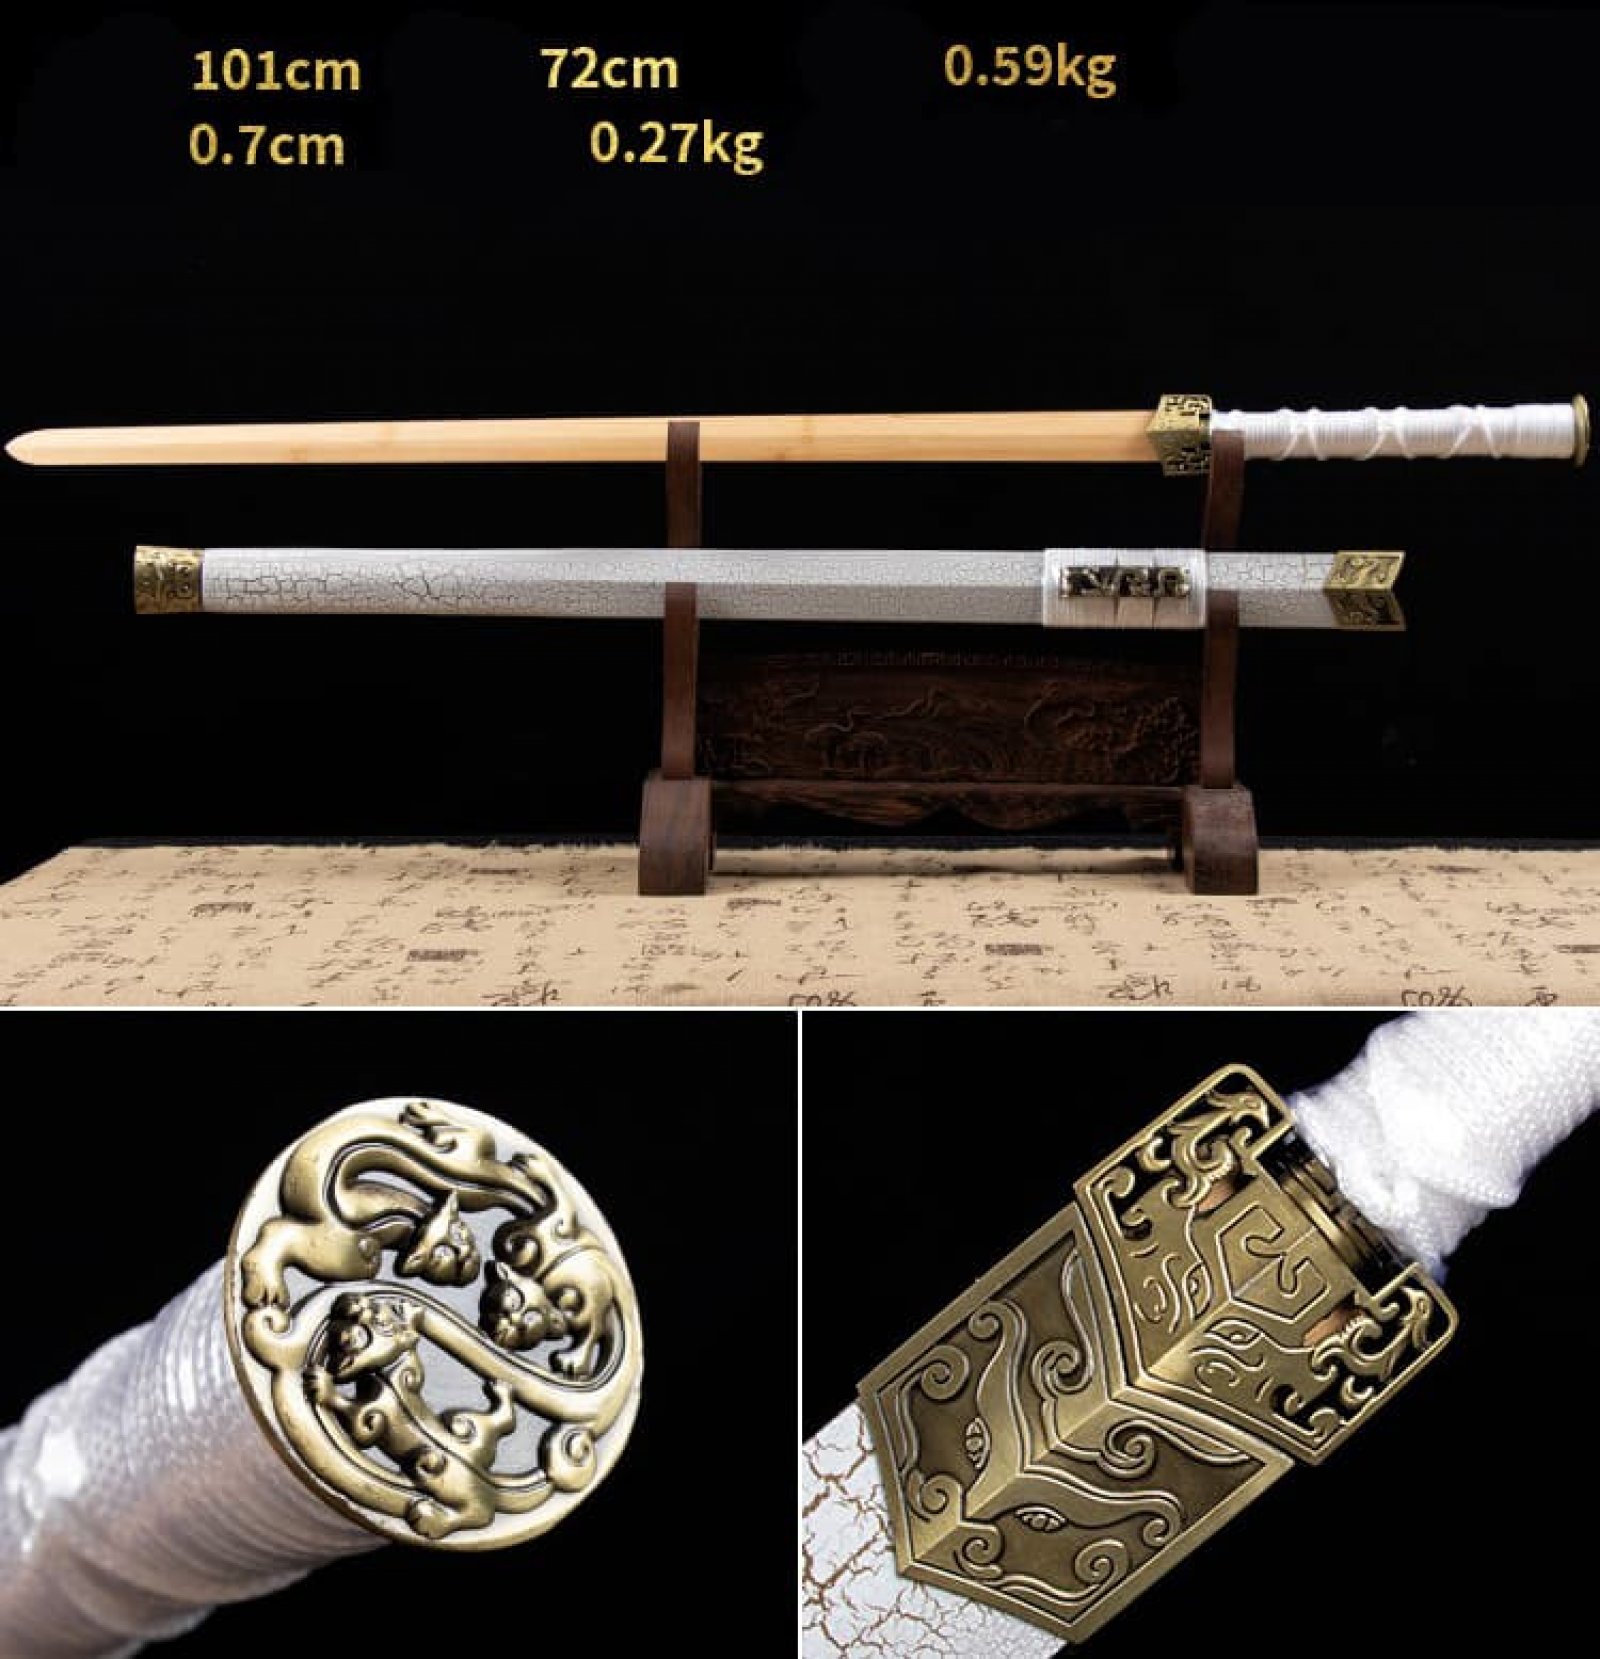 Kiếm gỗ samurai Nhật Bản vỏ kiếm đá sapphire màu trắng có tsuba 017